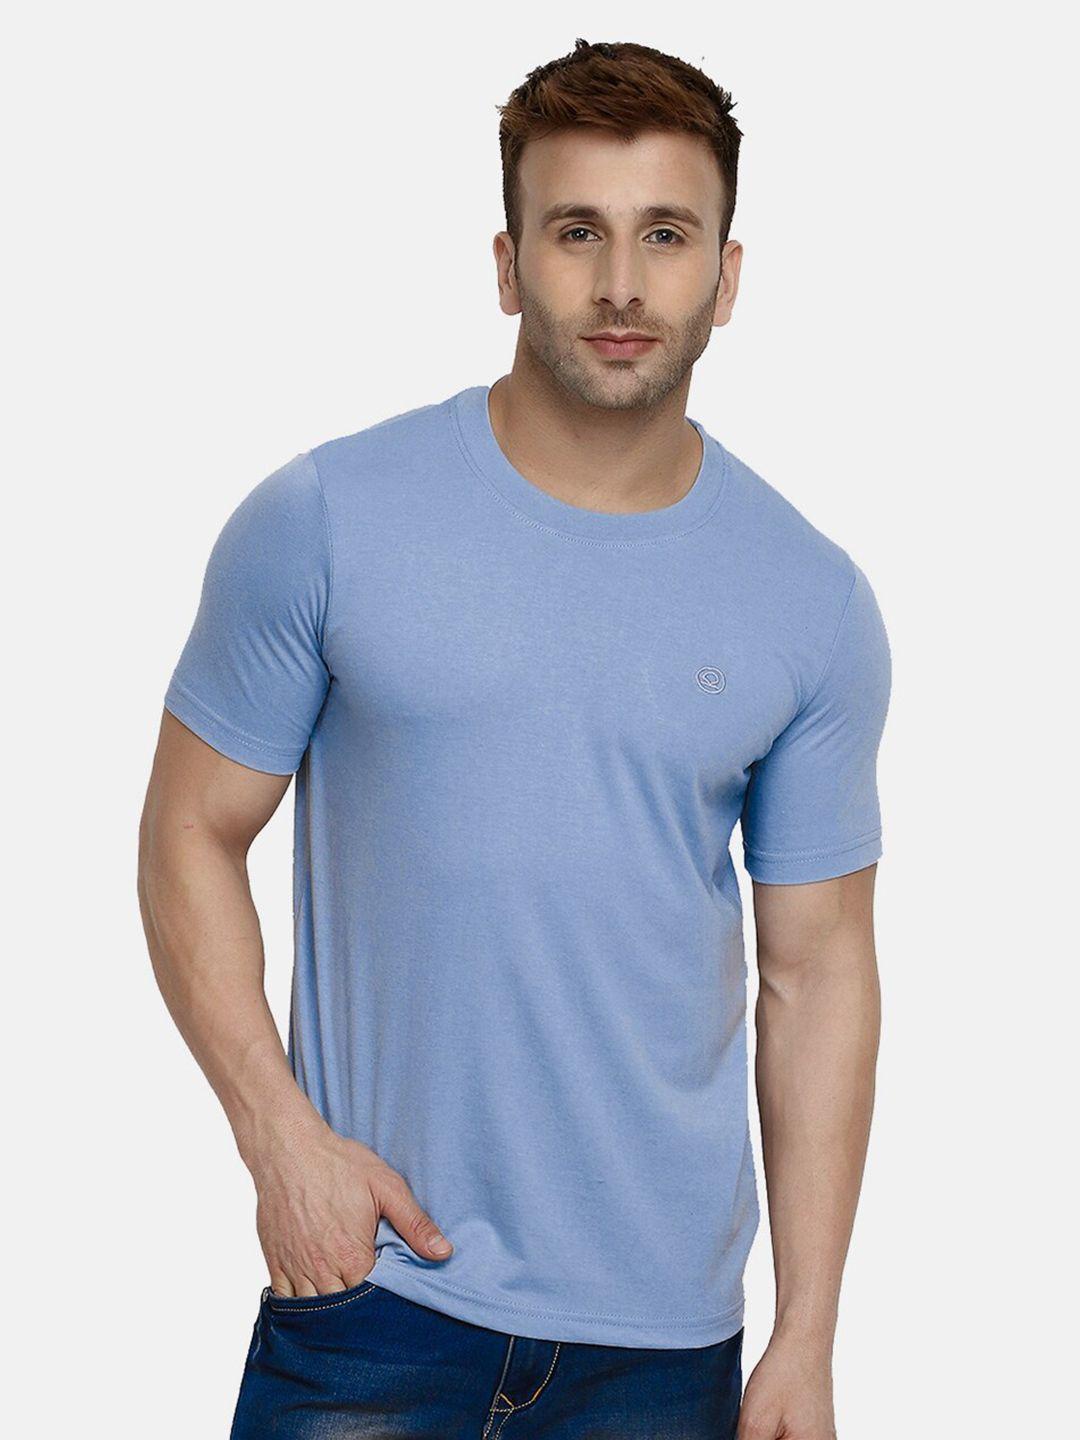 chkokko men blue t-shirt